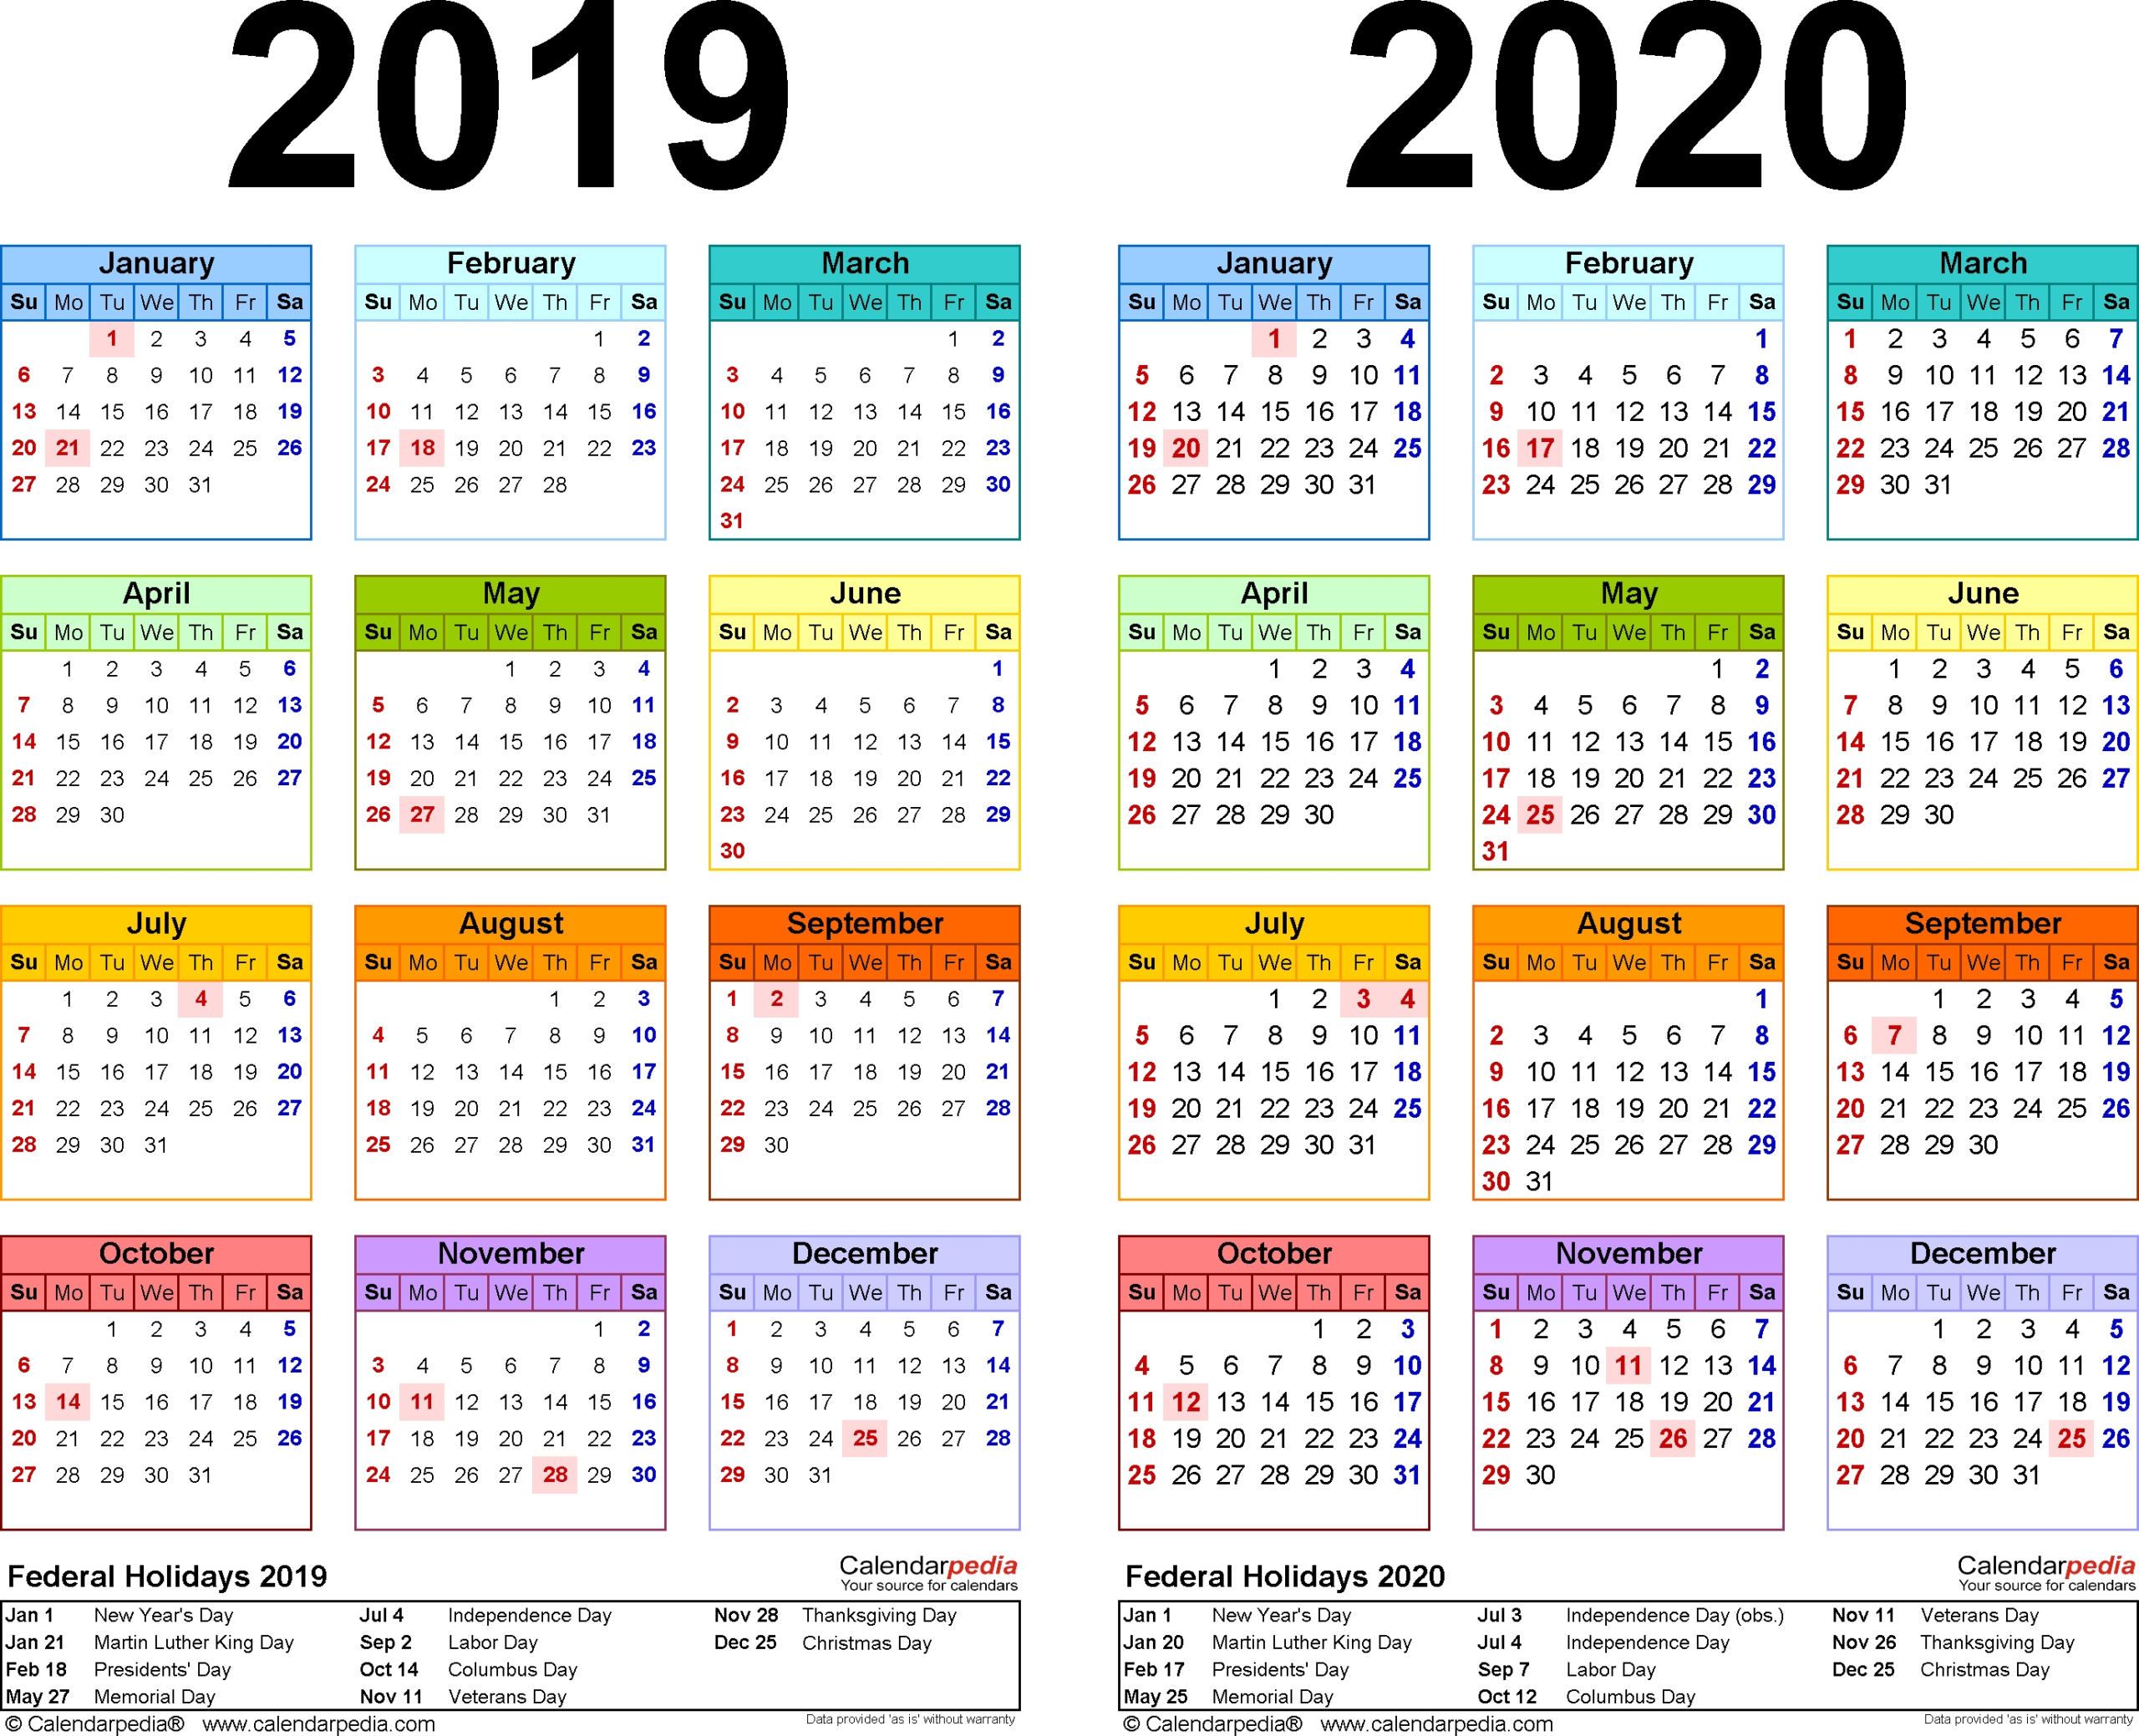 Tax Week Calendar 2019 2020 - Calendar Inspiration Design